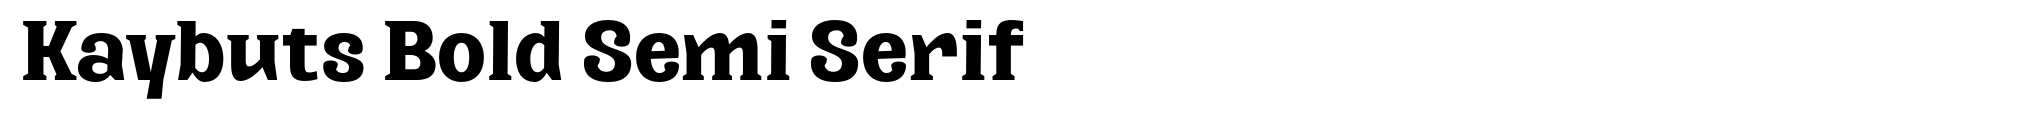 Kaybuts Bold Semi Serif image